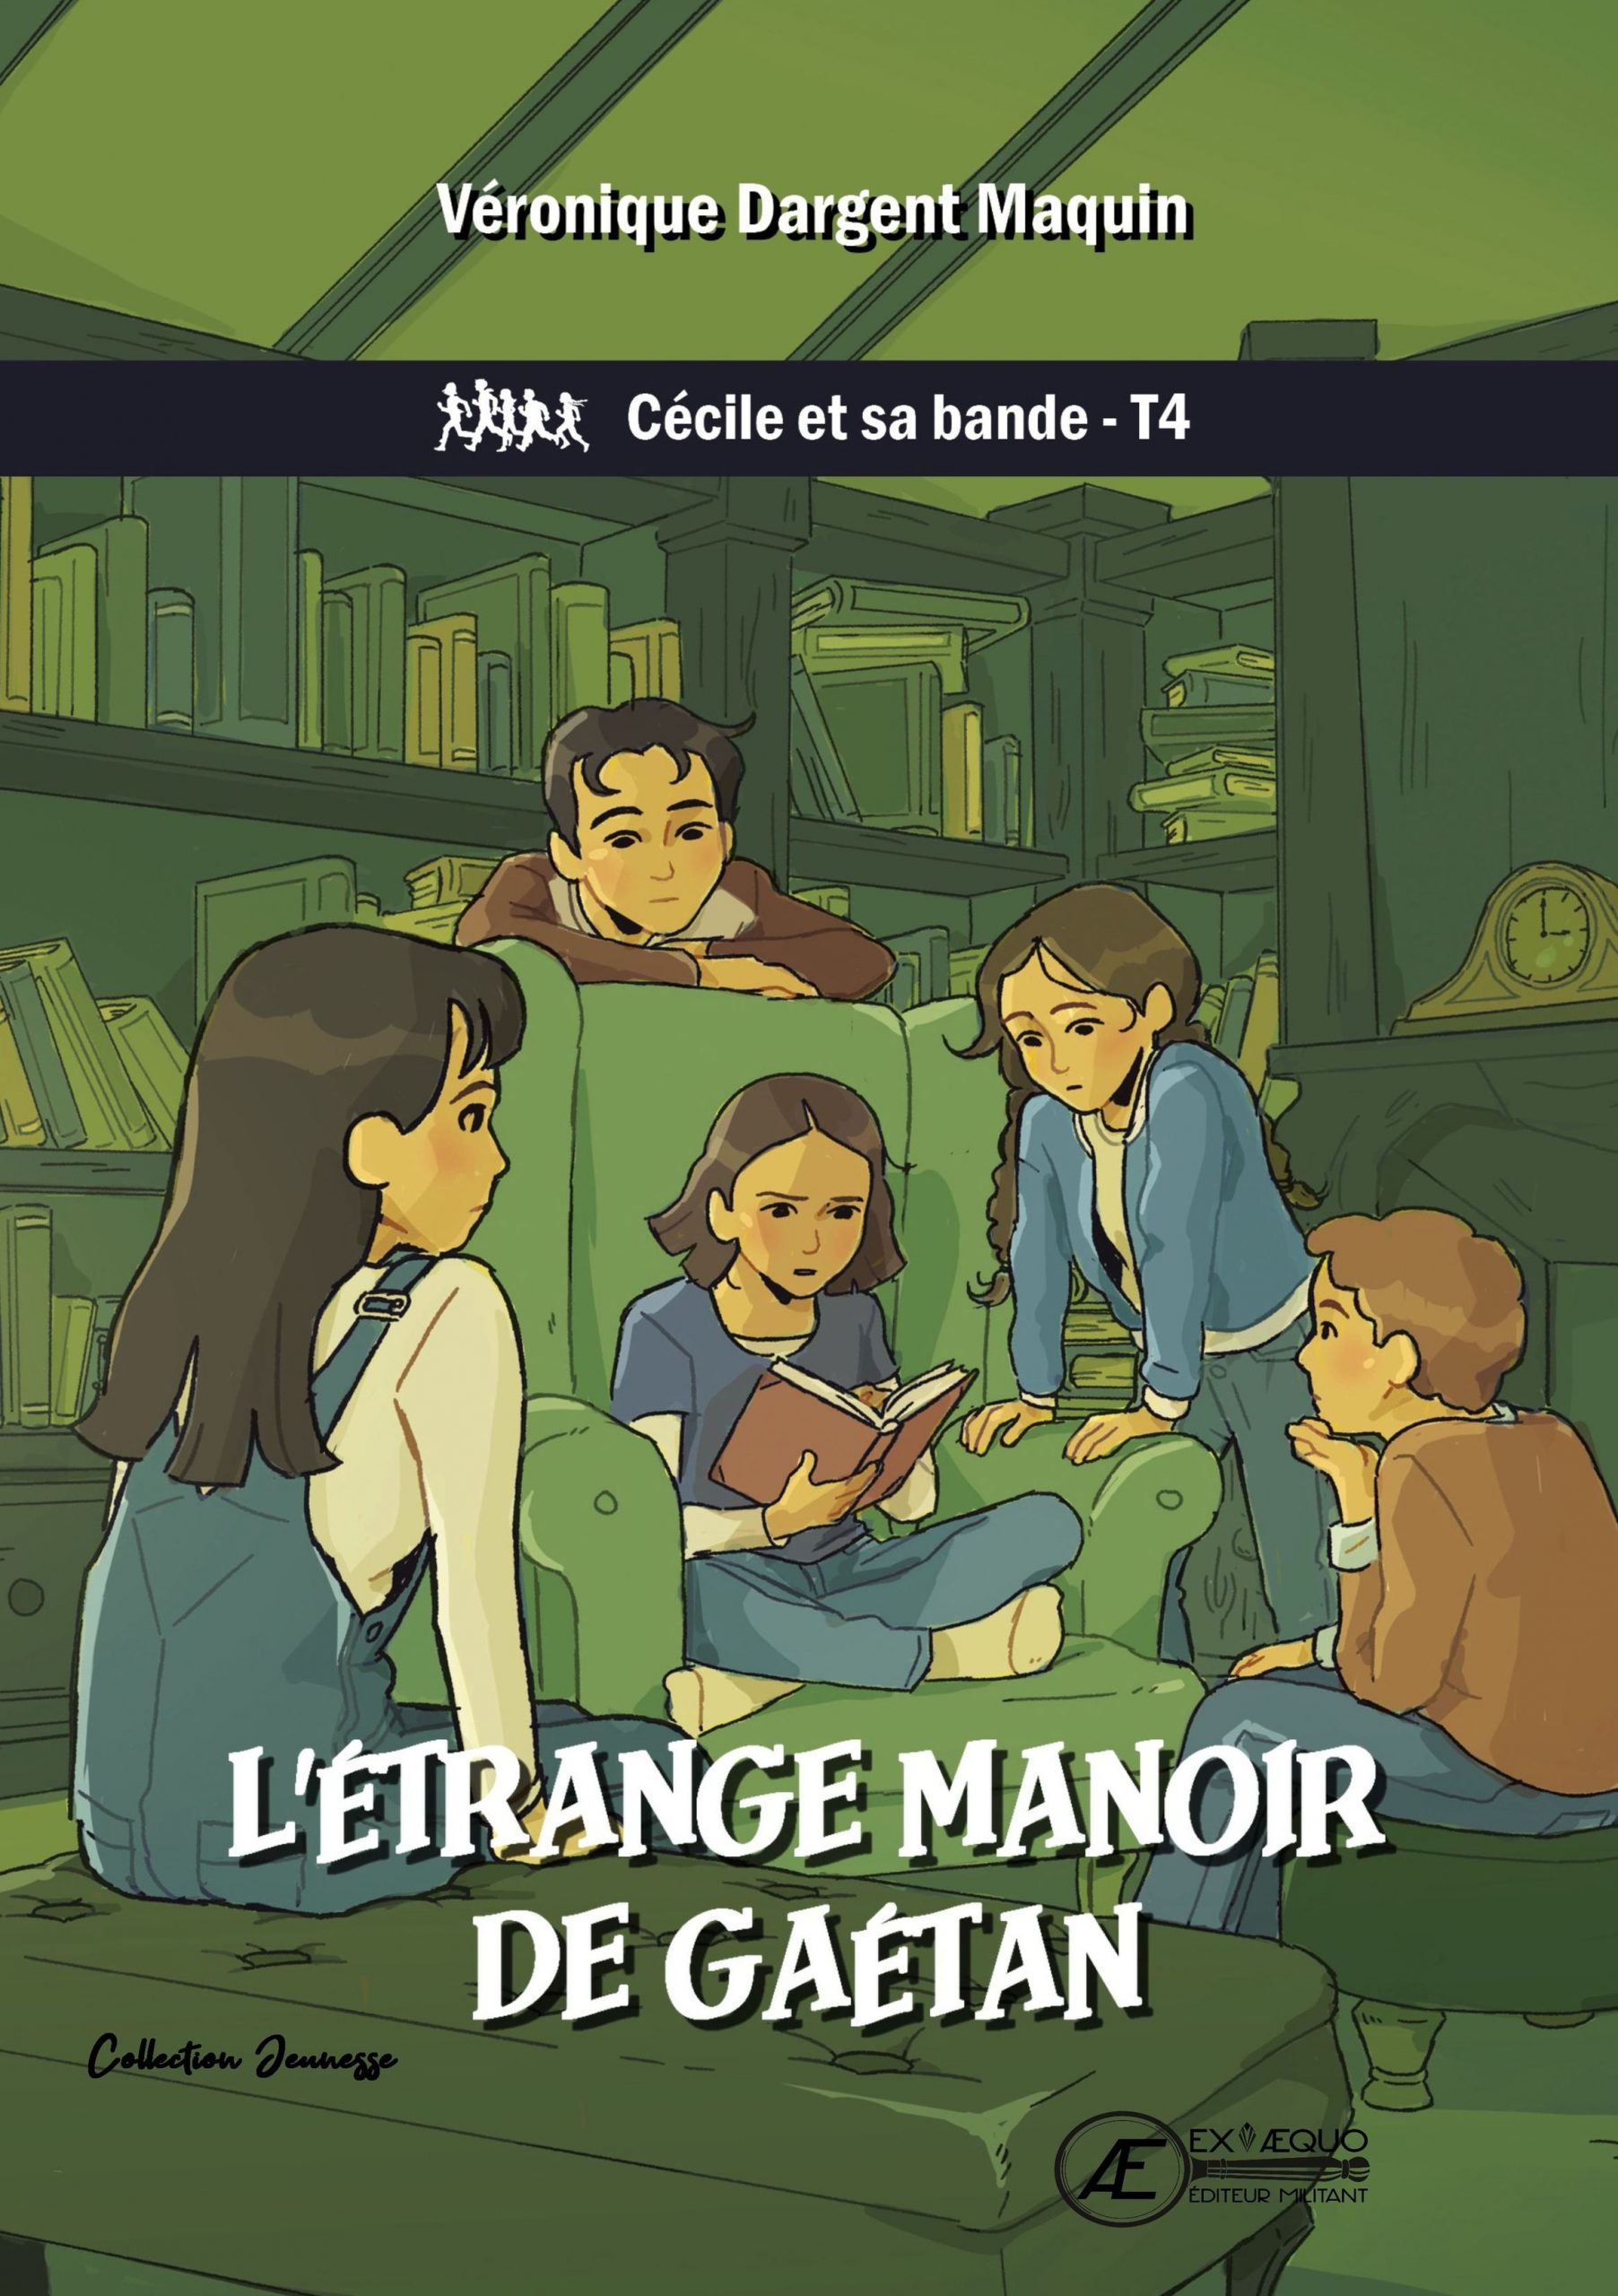 You are currently viewing L’étrange manoir de Gaetan – Cécile et sa bande T4